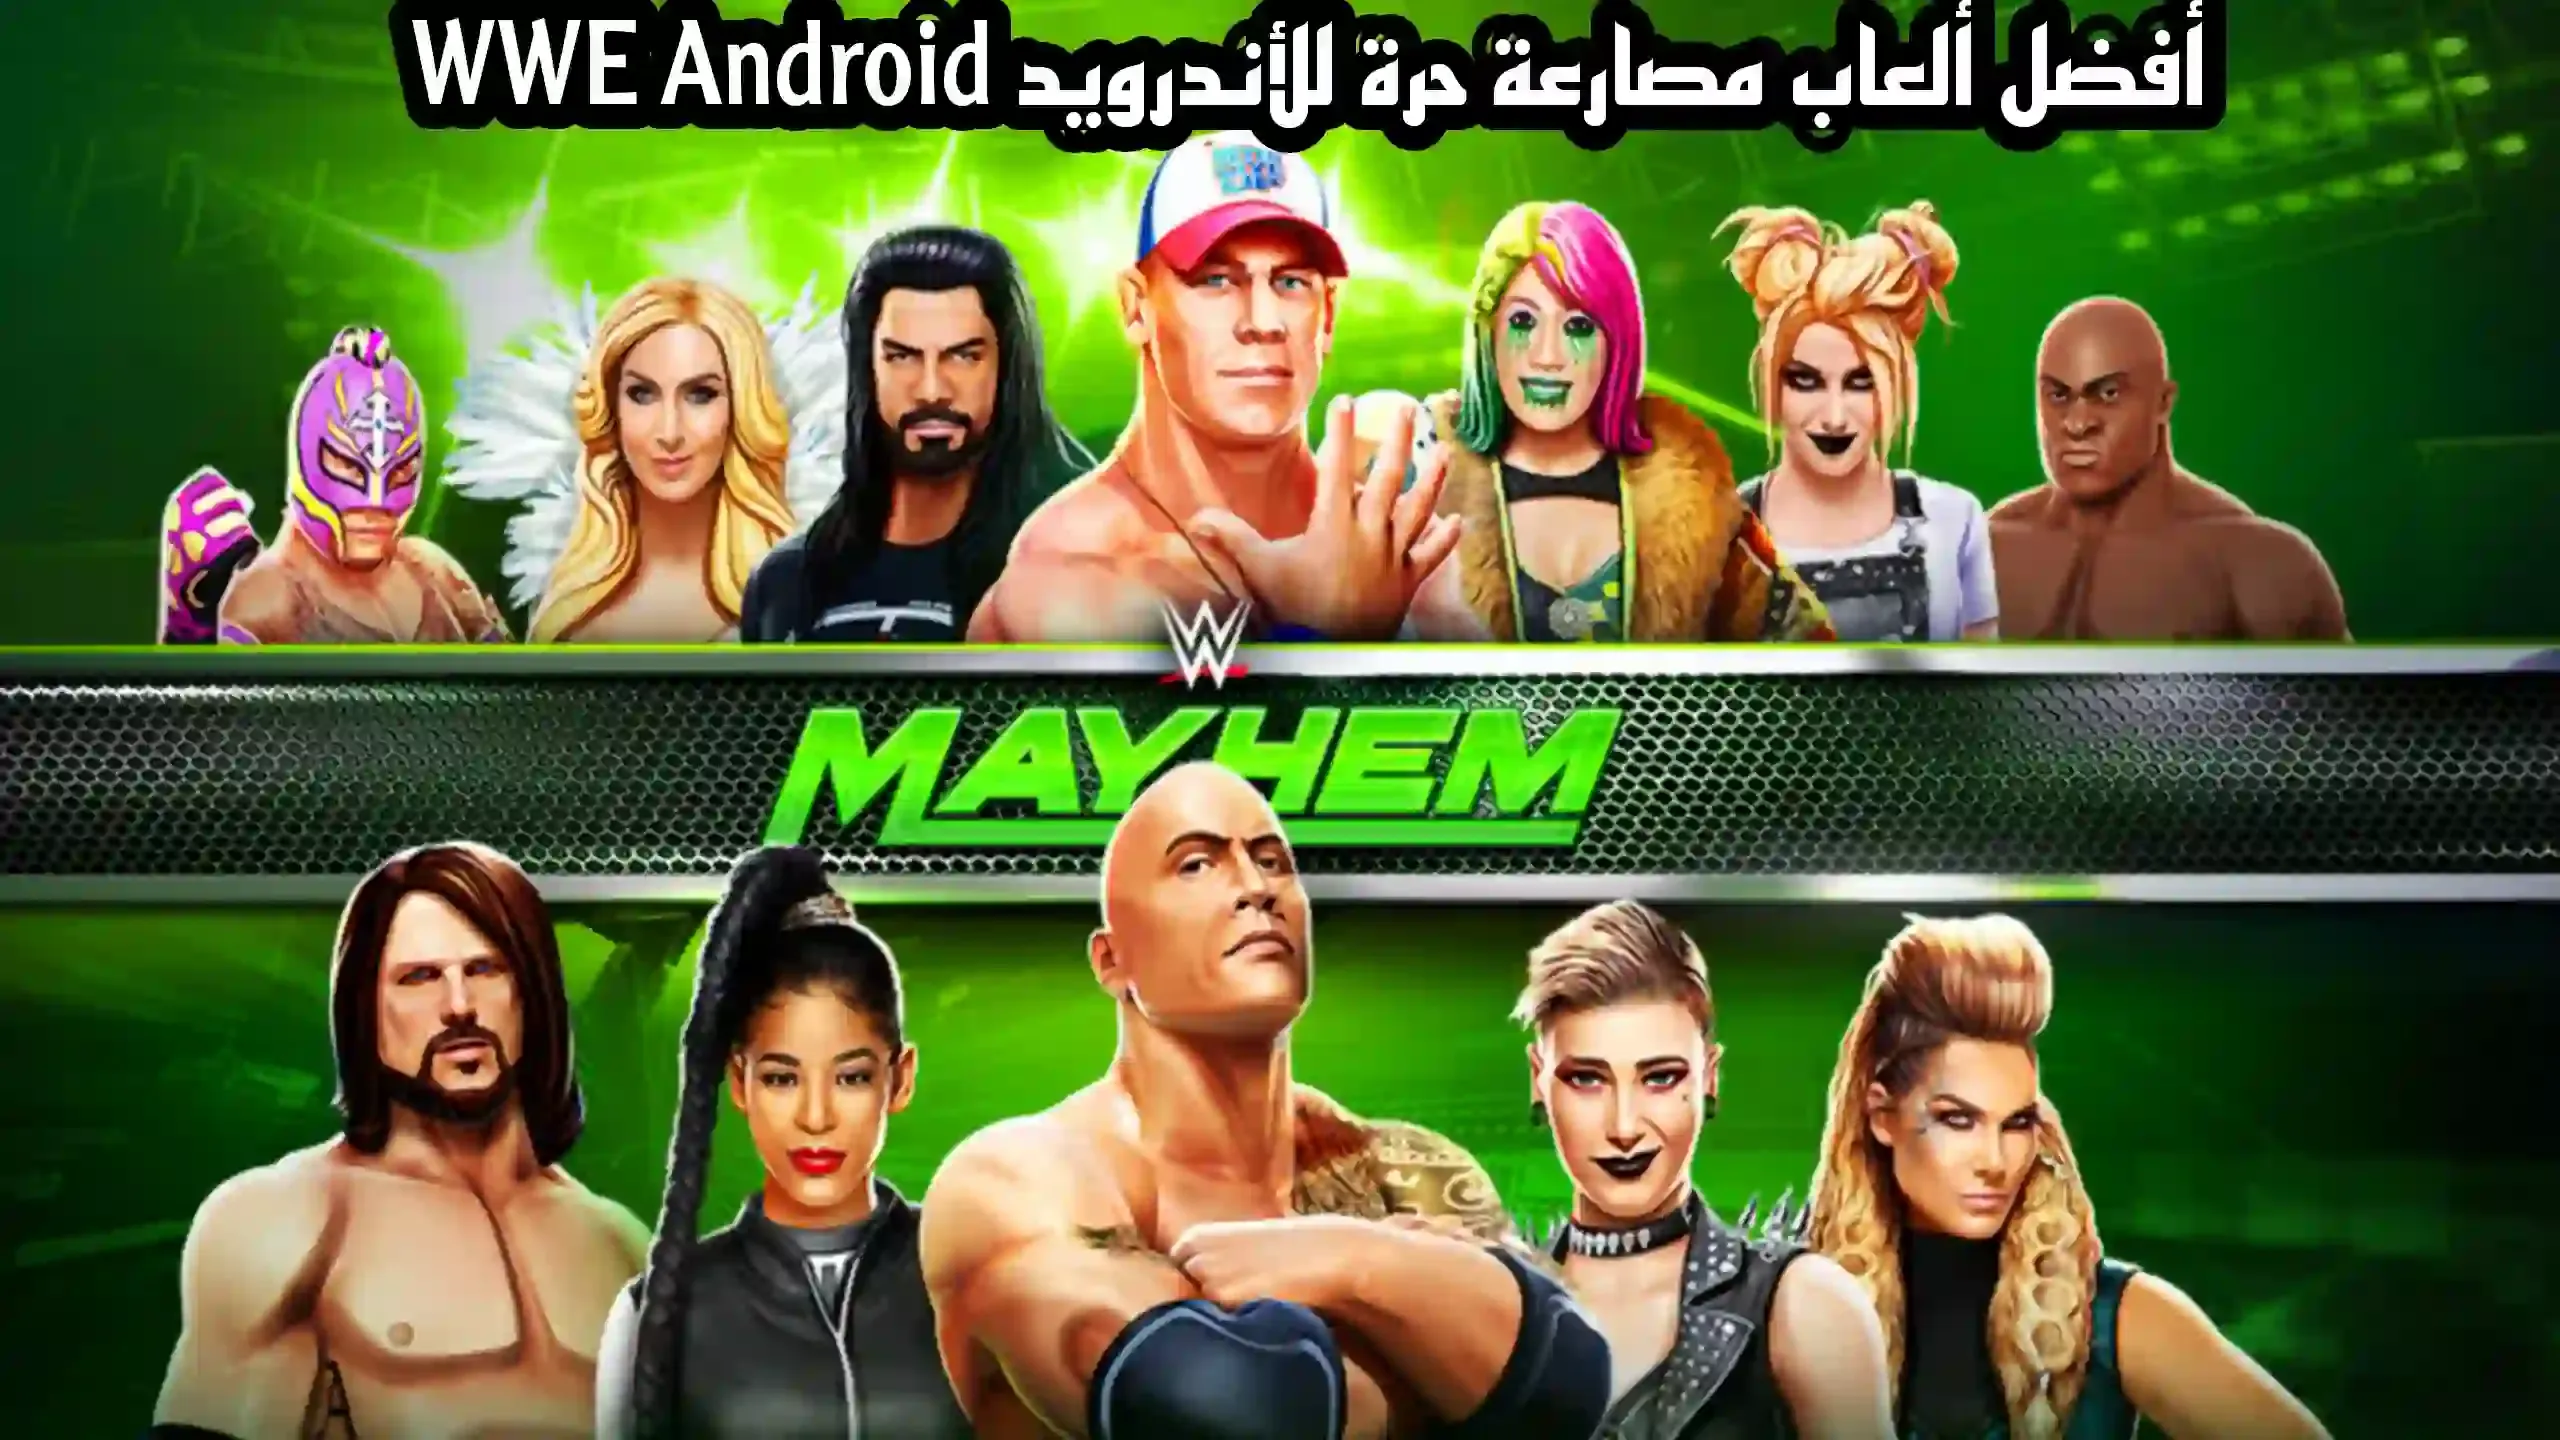 أفضل ألعاب مصارعة حرة للأندرويد WWE Android